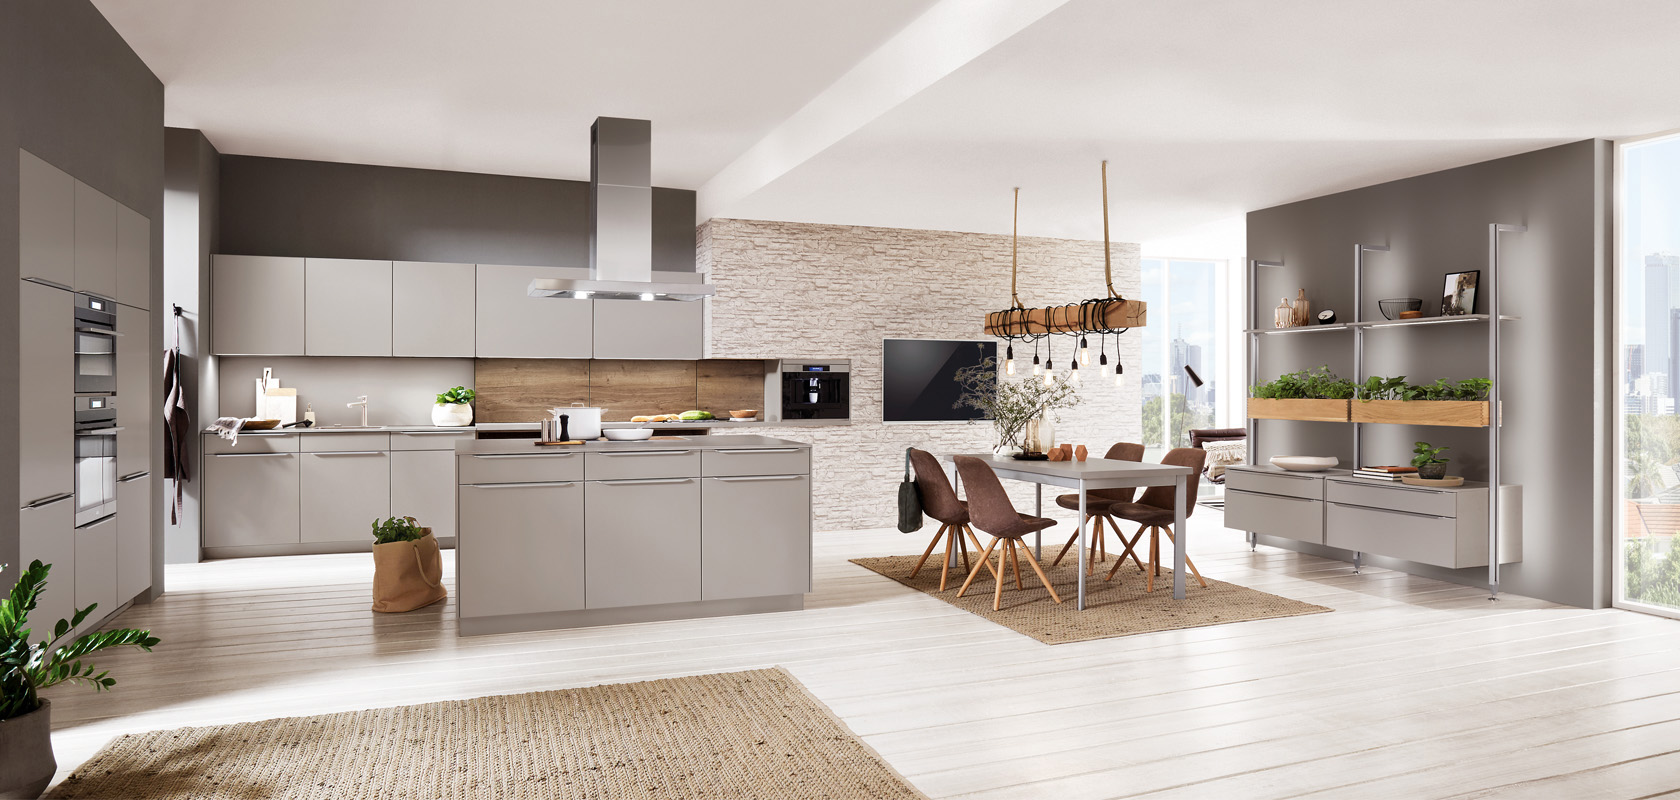 Moderne Kücheninnenräume mit klaren Linien, eleganten Schränken, Edelstahlgeräten und einem gemütlichen Essbereich, der in natürlichem Licht gebadet wird.